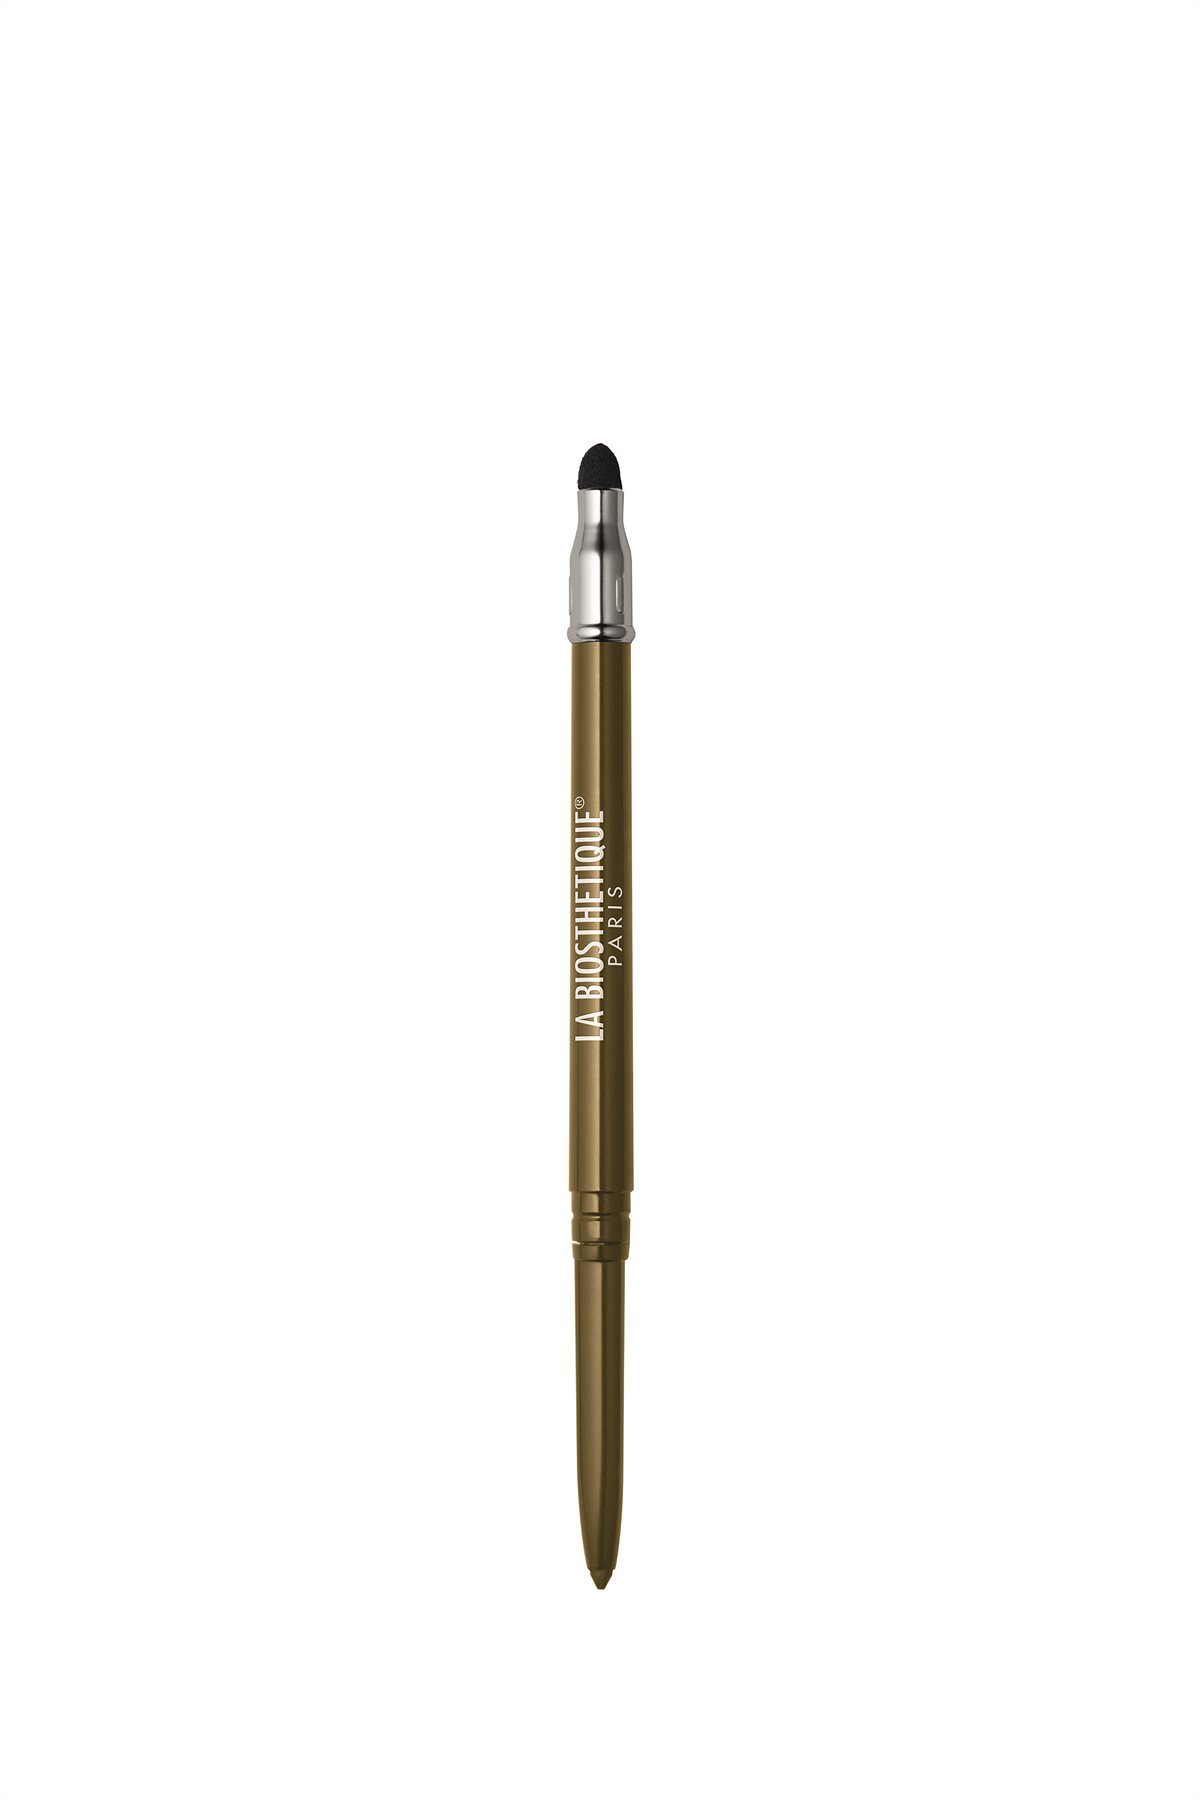 La Biosthétique_Lidstift wasserfest_Automatic Pencil for Eyes K26 Golden Tin_0,28g_21.50 €